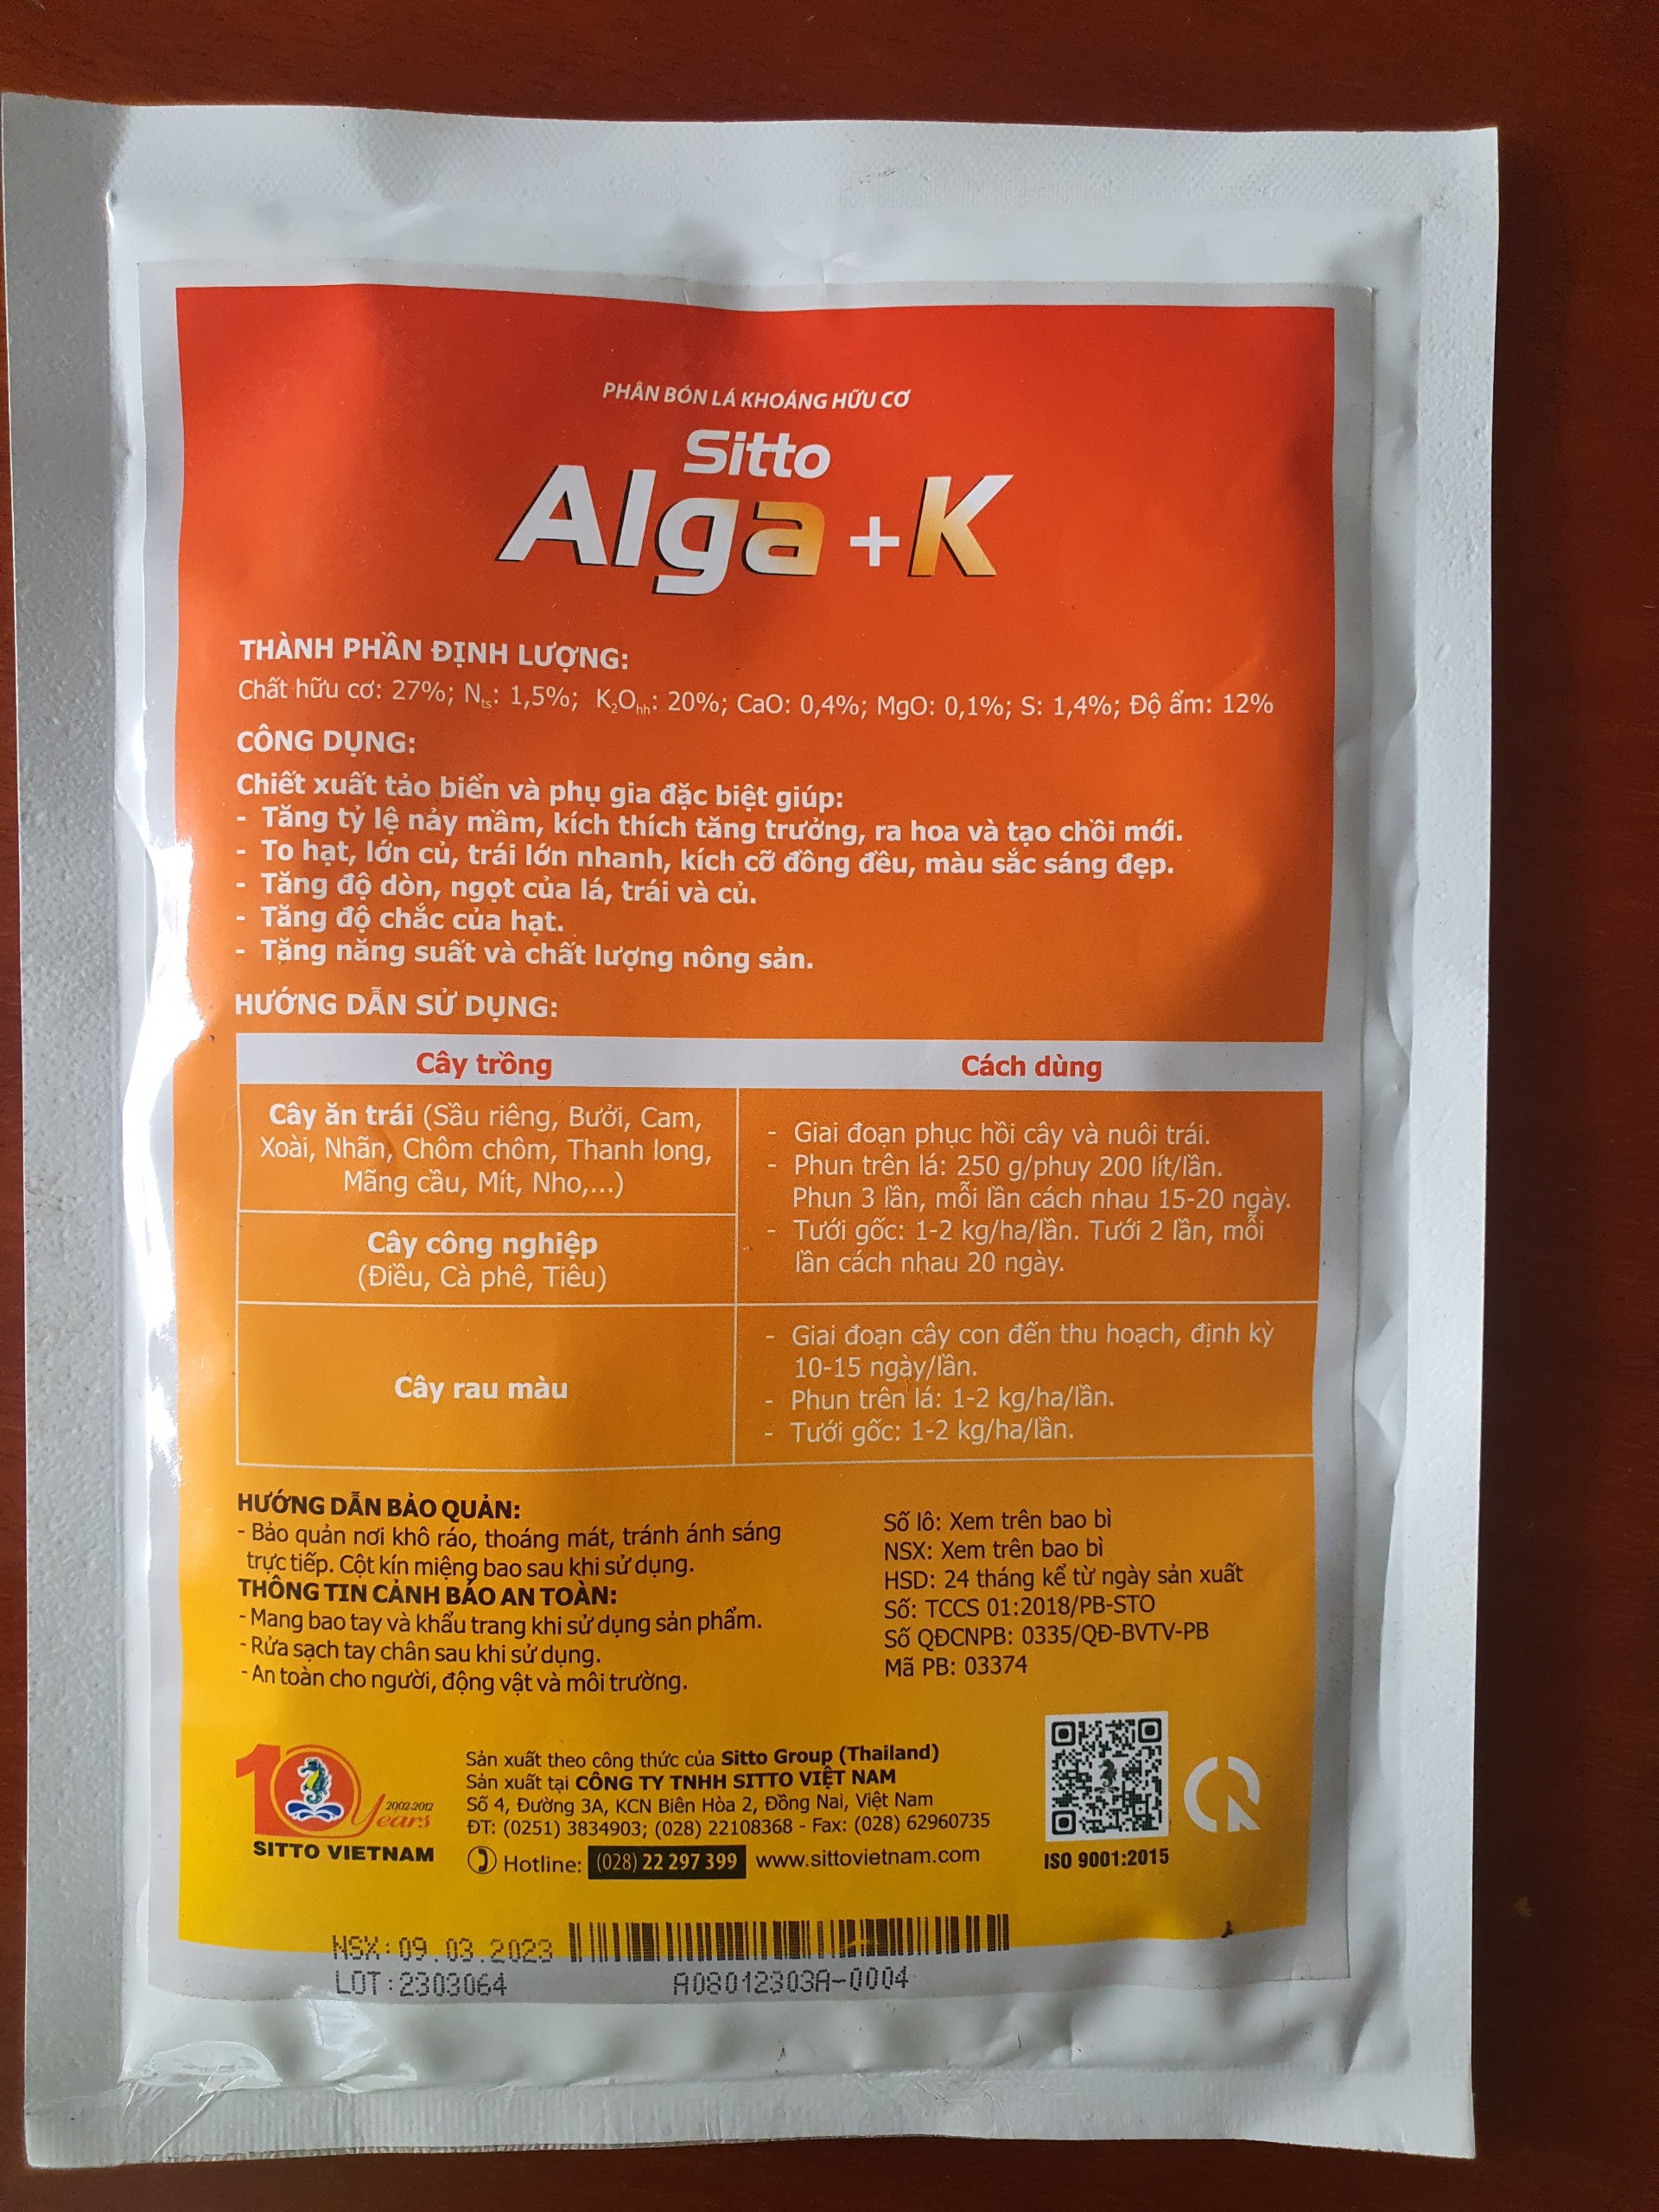 Kali rong biển, phục hồi cây nhanh, nuôi trái sáng đẹp mã Alga + K - gói 250g